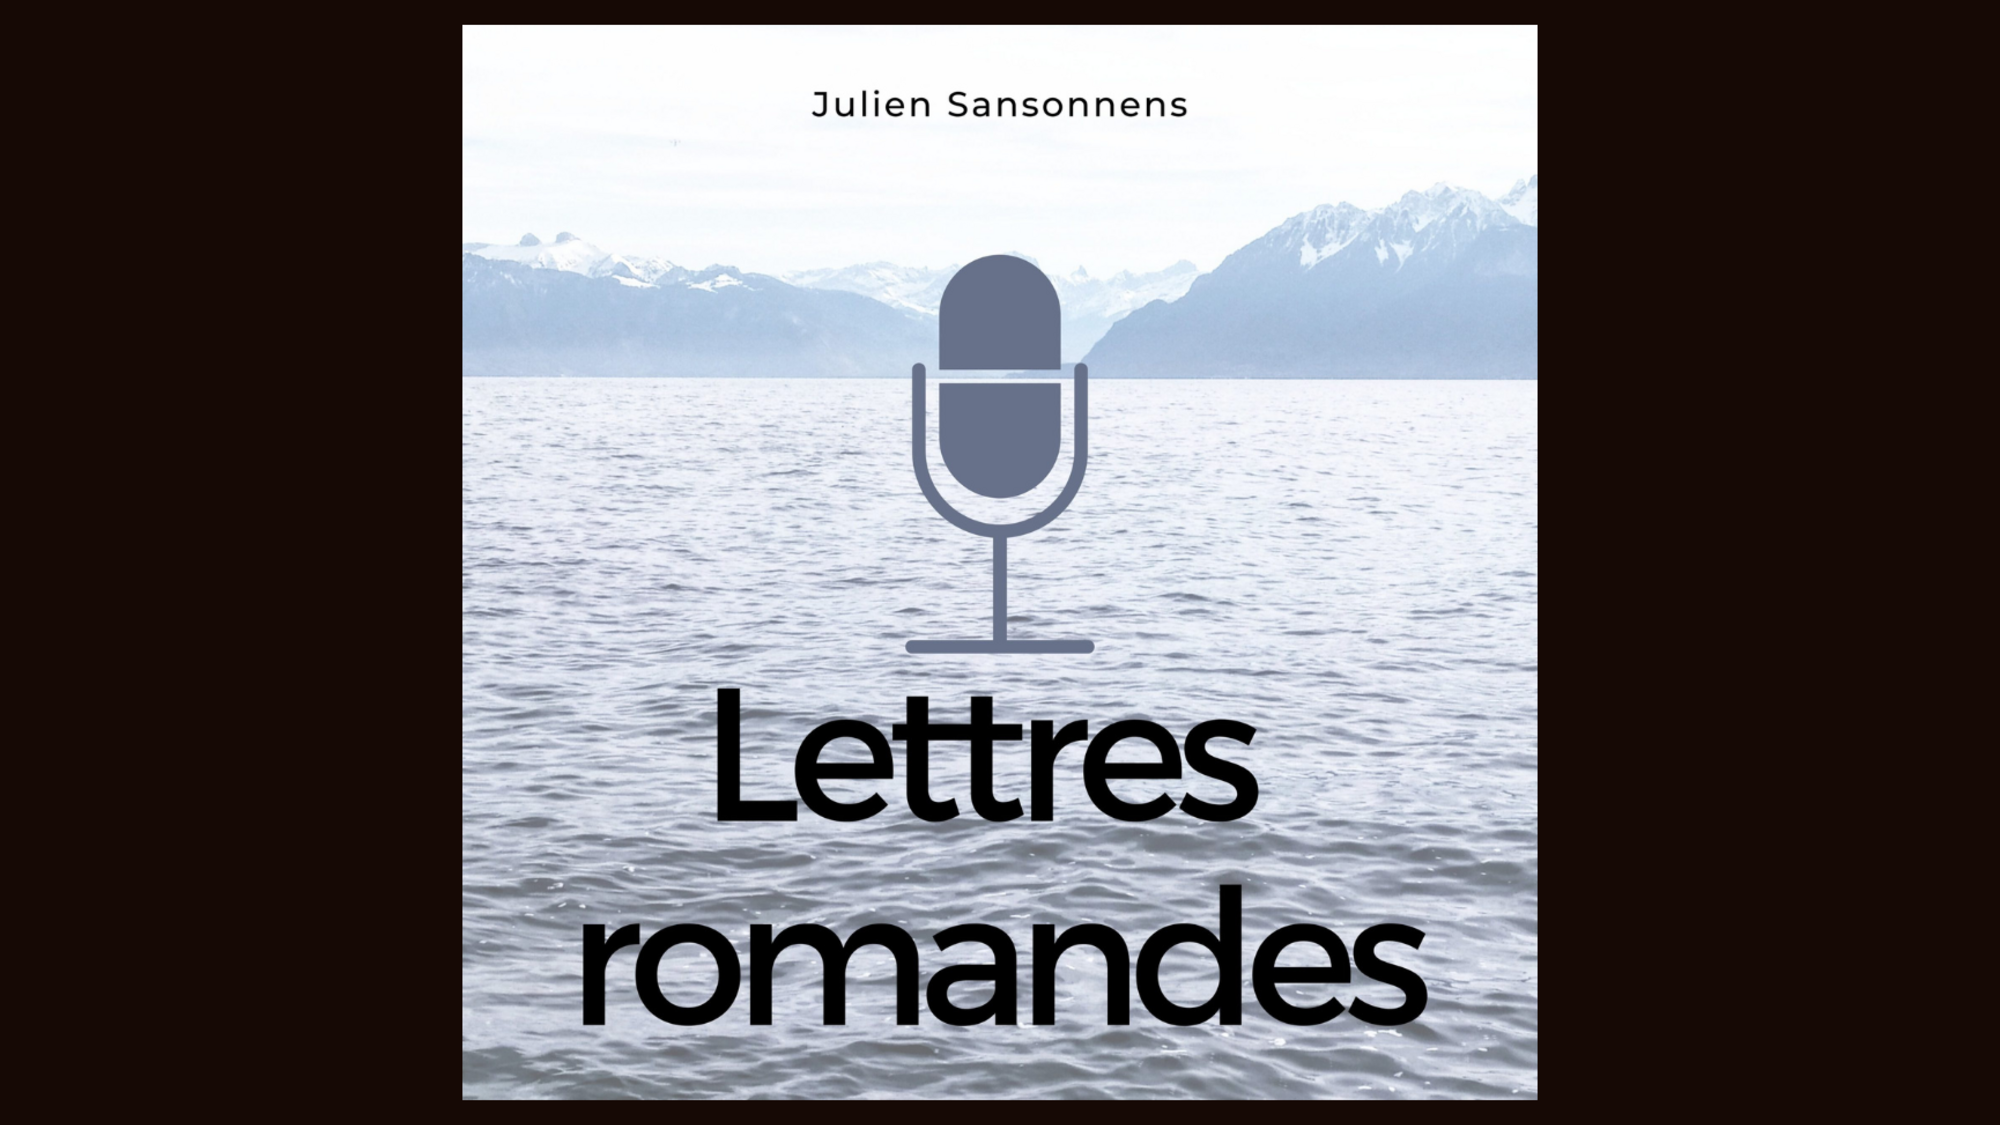 Logo du podcast littéraire Lettres romandes